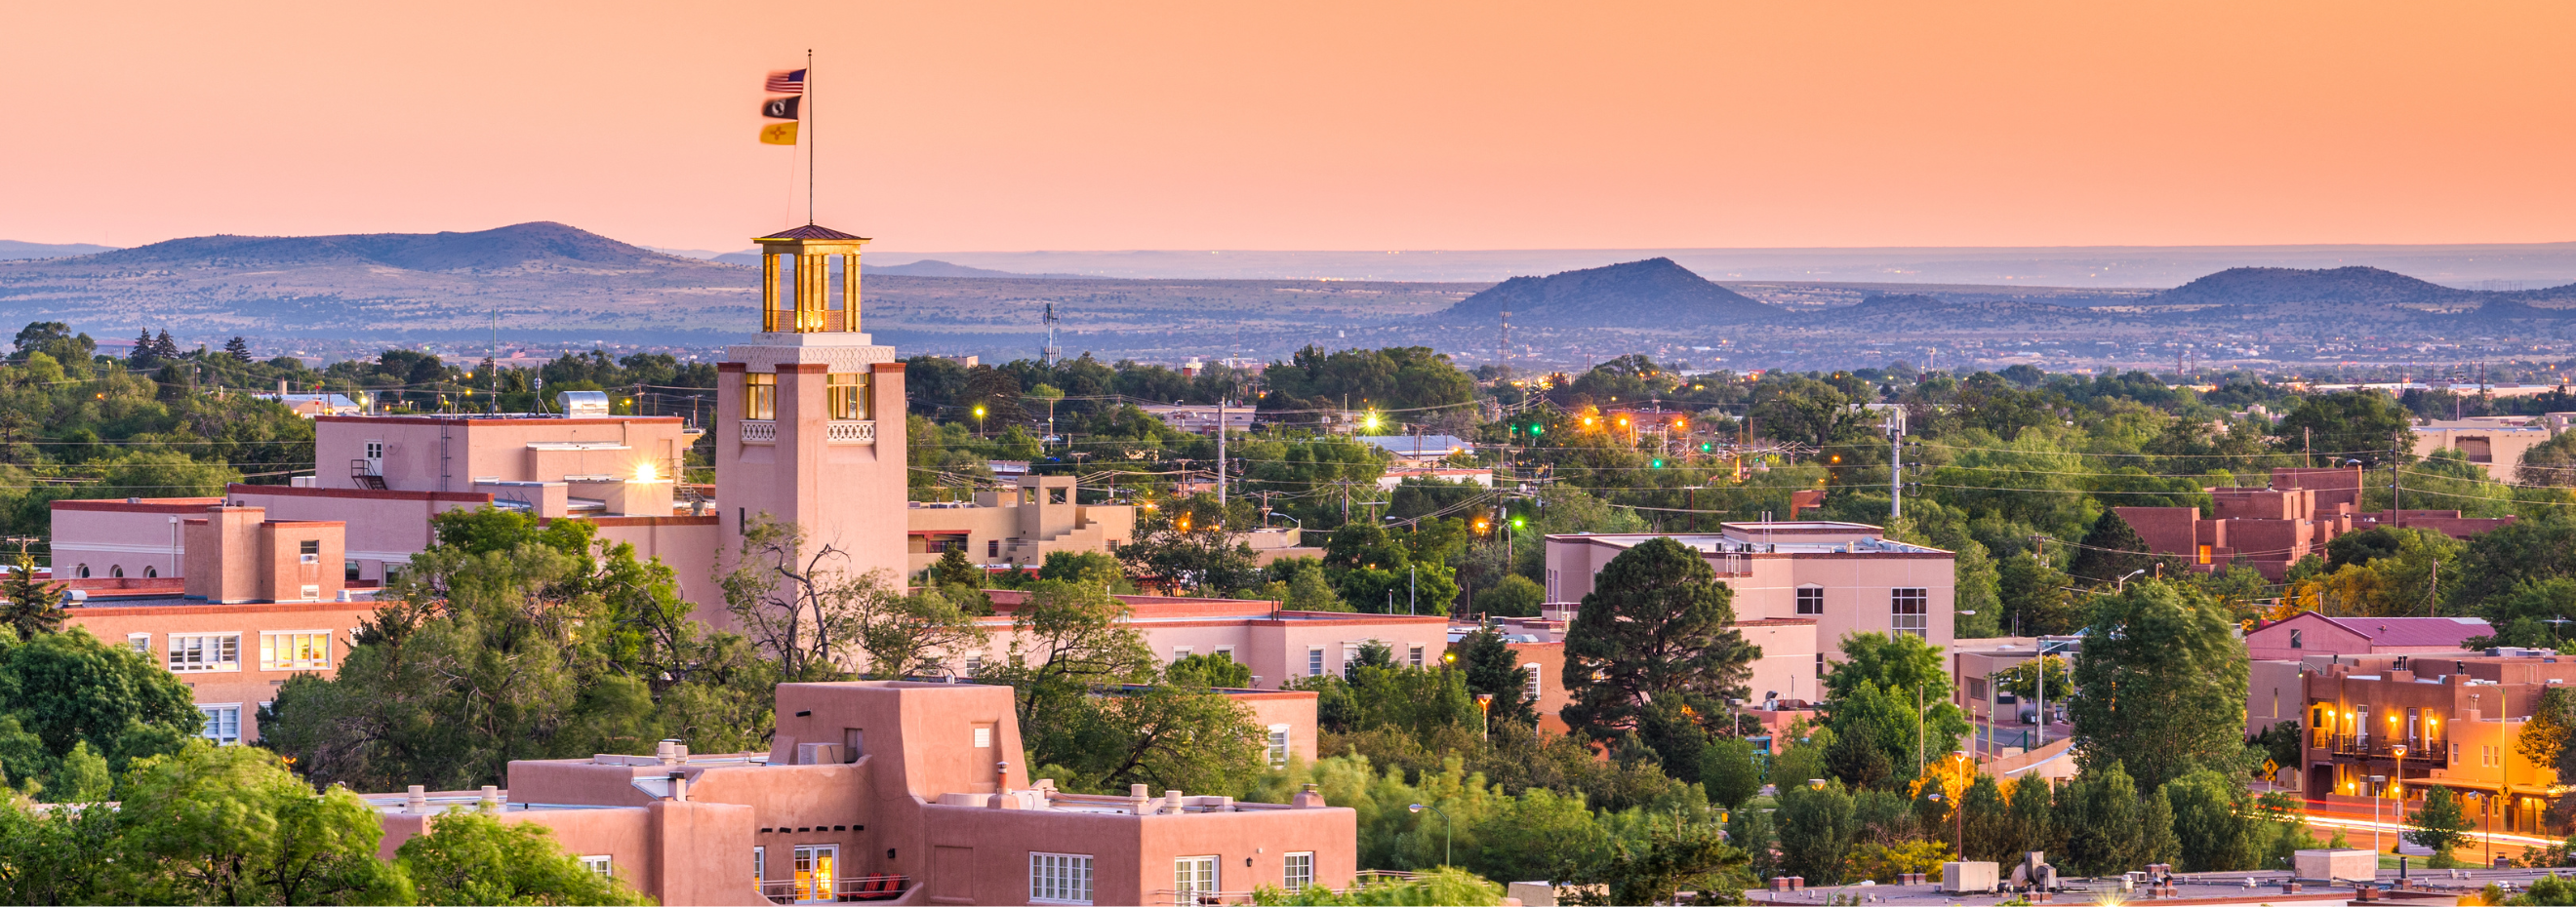 Image of Santa Fe, New Mexico skyline at dusk.